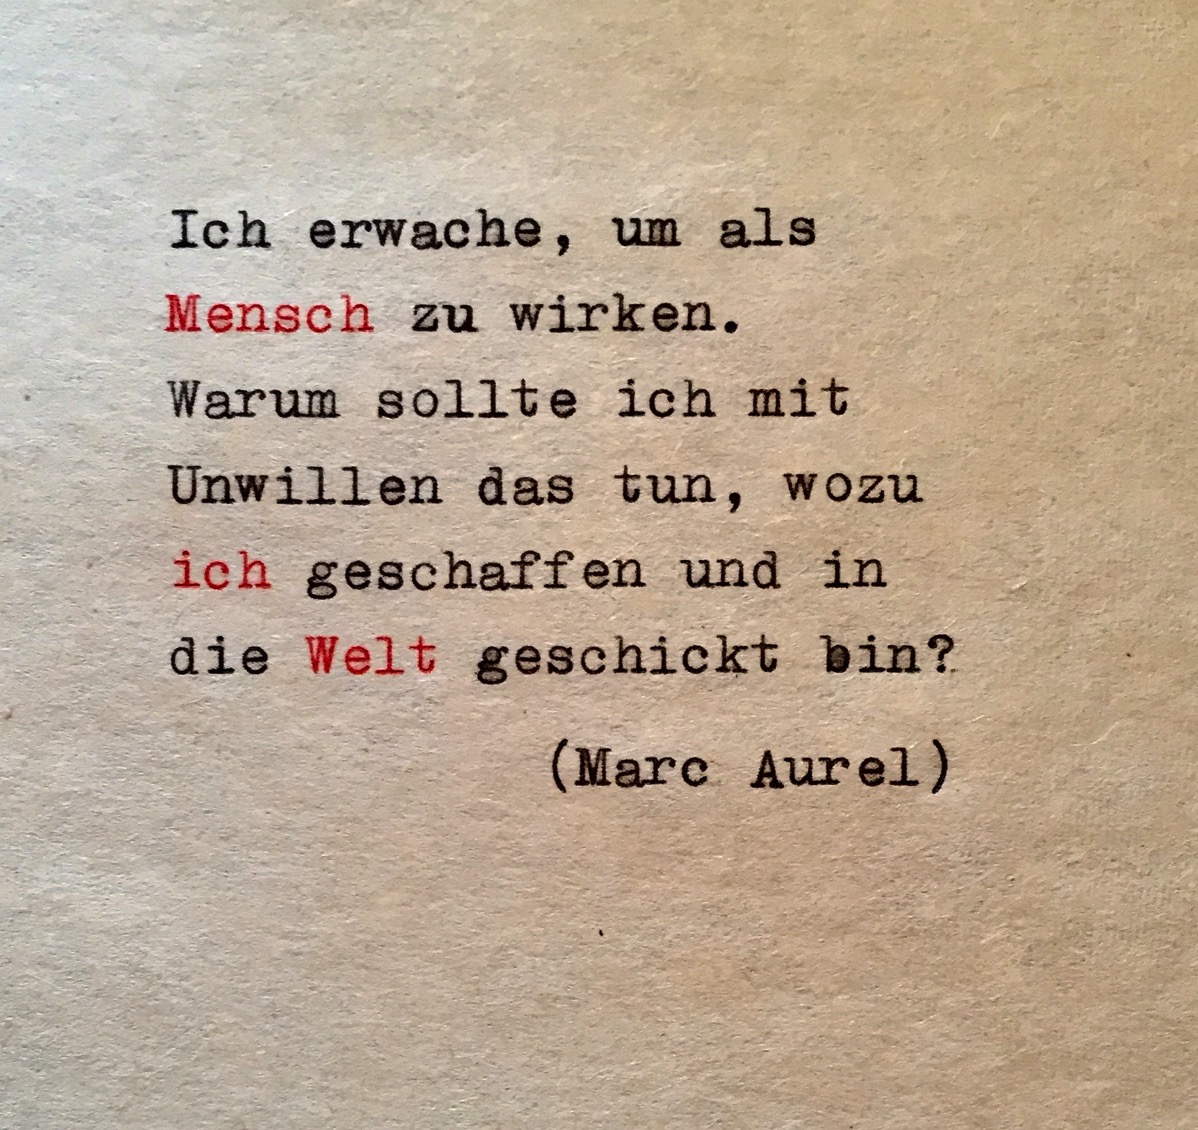 Zitat von Marc Aurel über das Menschsein